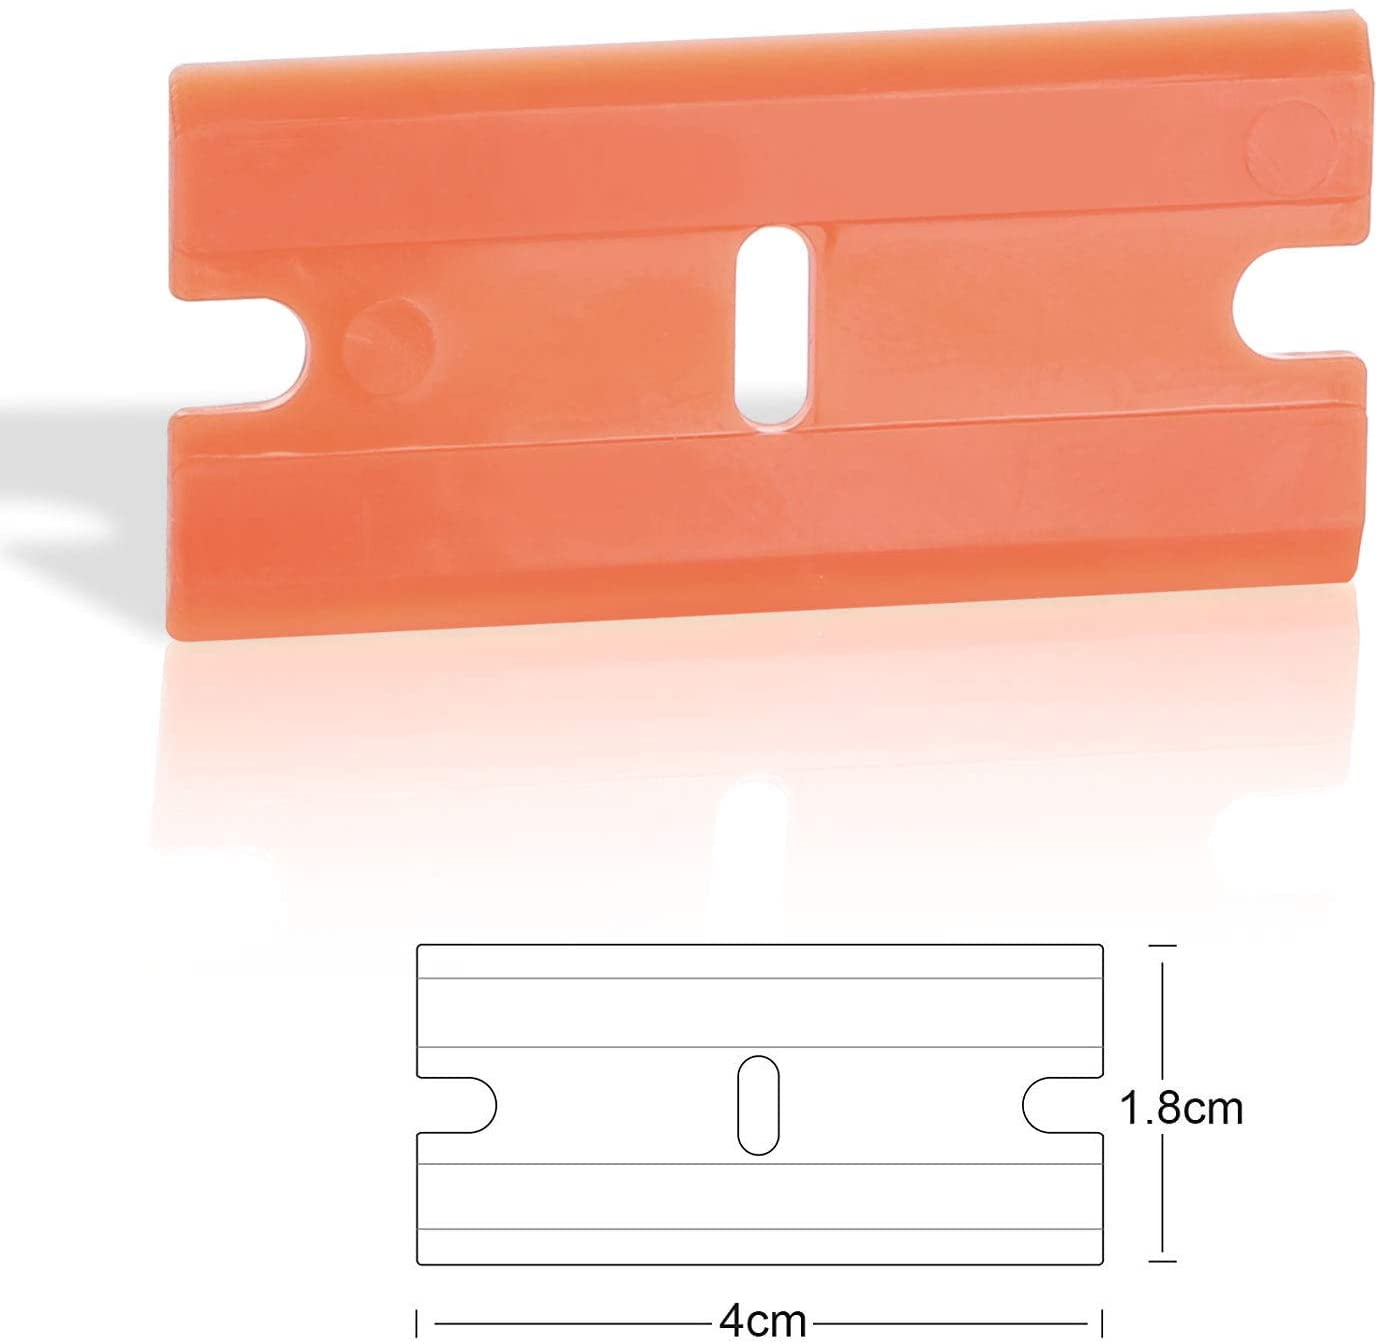 Exanko 3PCS Plastic Razor Blade Scrapers & 100 PCS 1.5 Inch Double Plastic Razor Blades for Auto Window Tint Vinyl Tool 